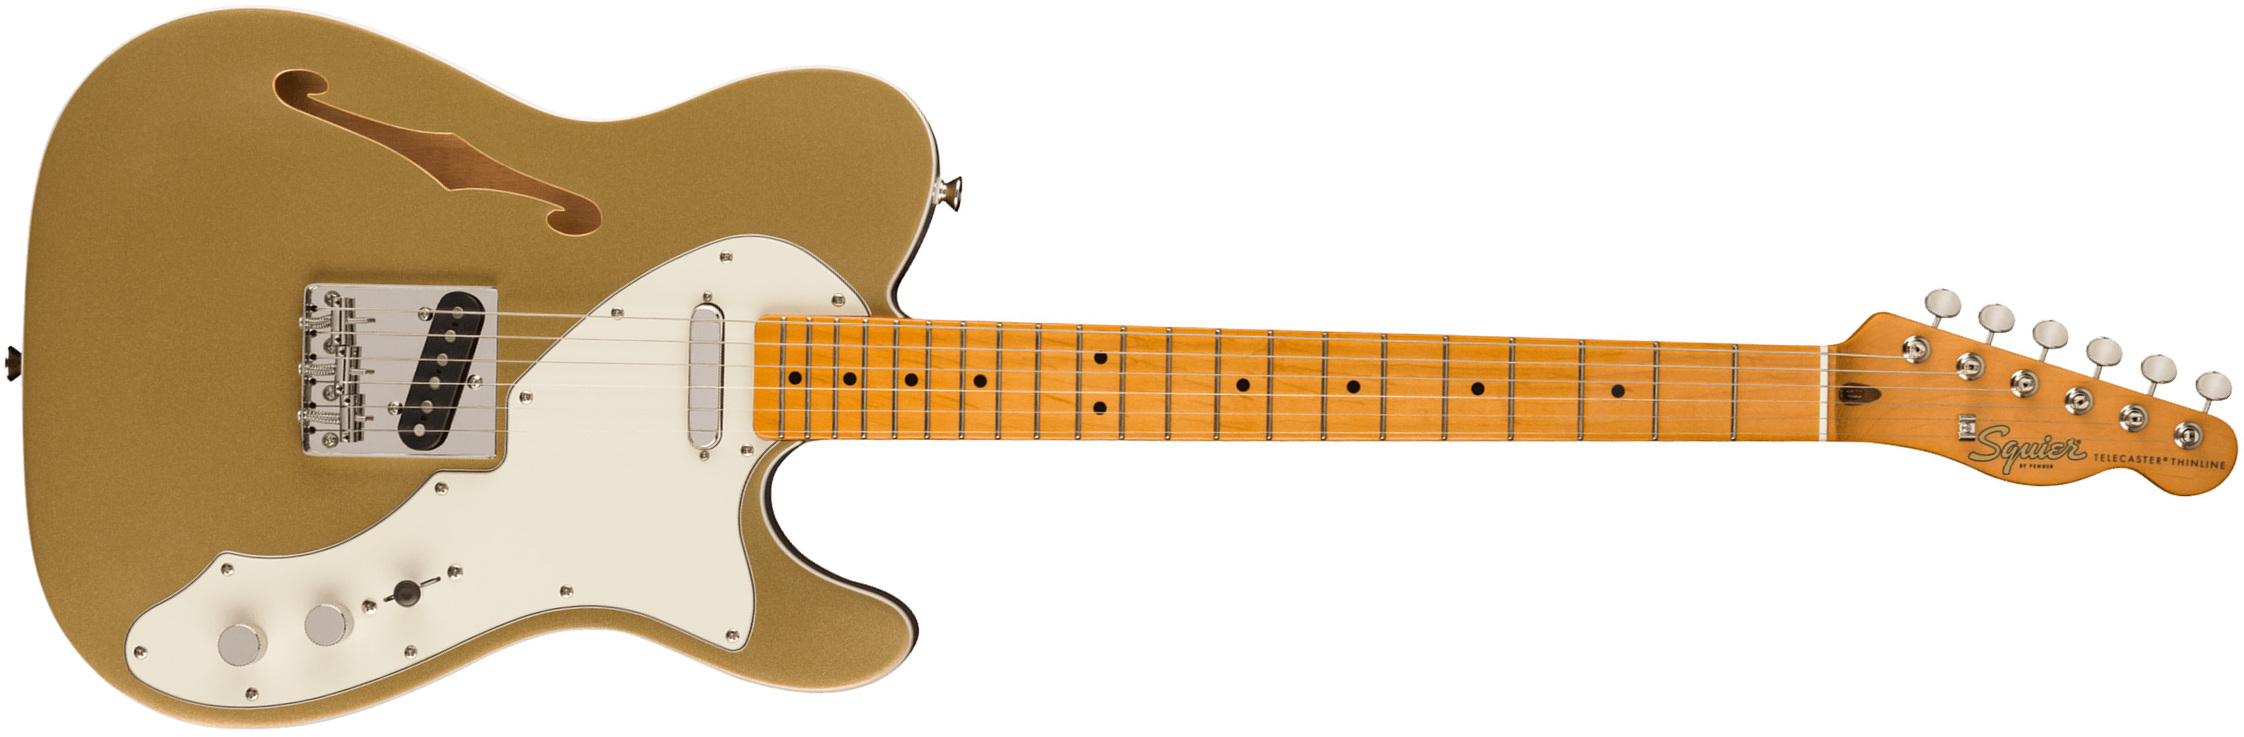 Squier Tele '60s Thinline Parchment Pickguard Classic Vibe Fsr 2s Ht Mn - Aztec Gold - Guitarra eléctrica con forma de tel - Main picture